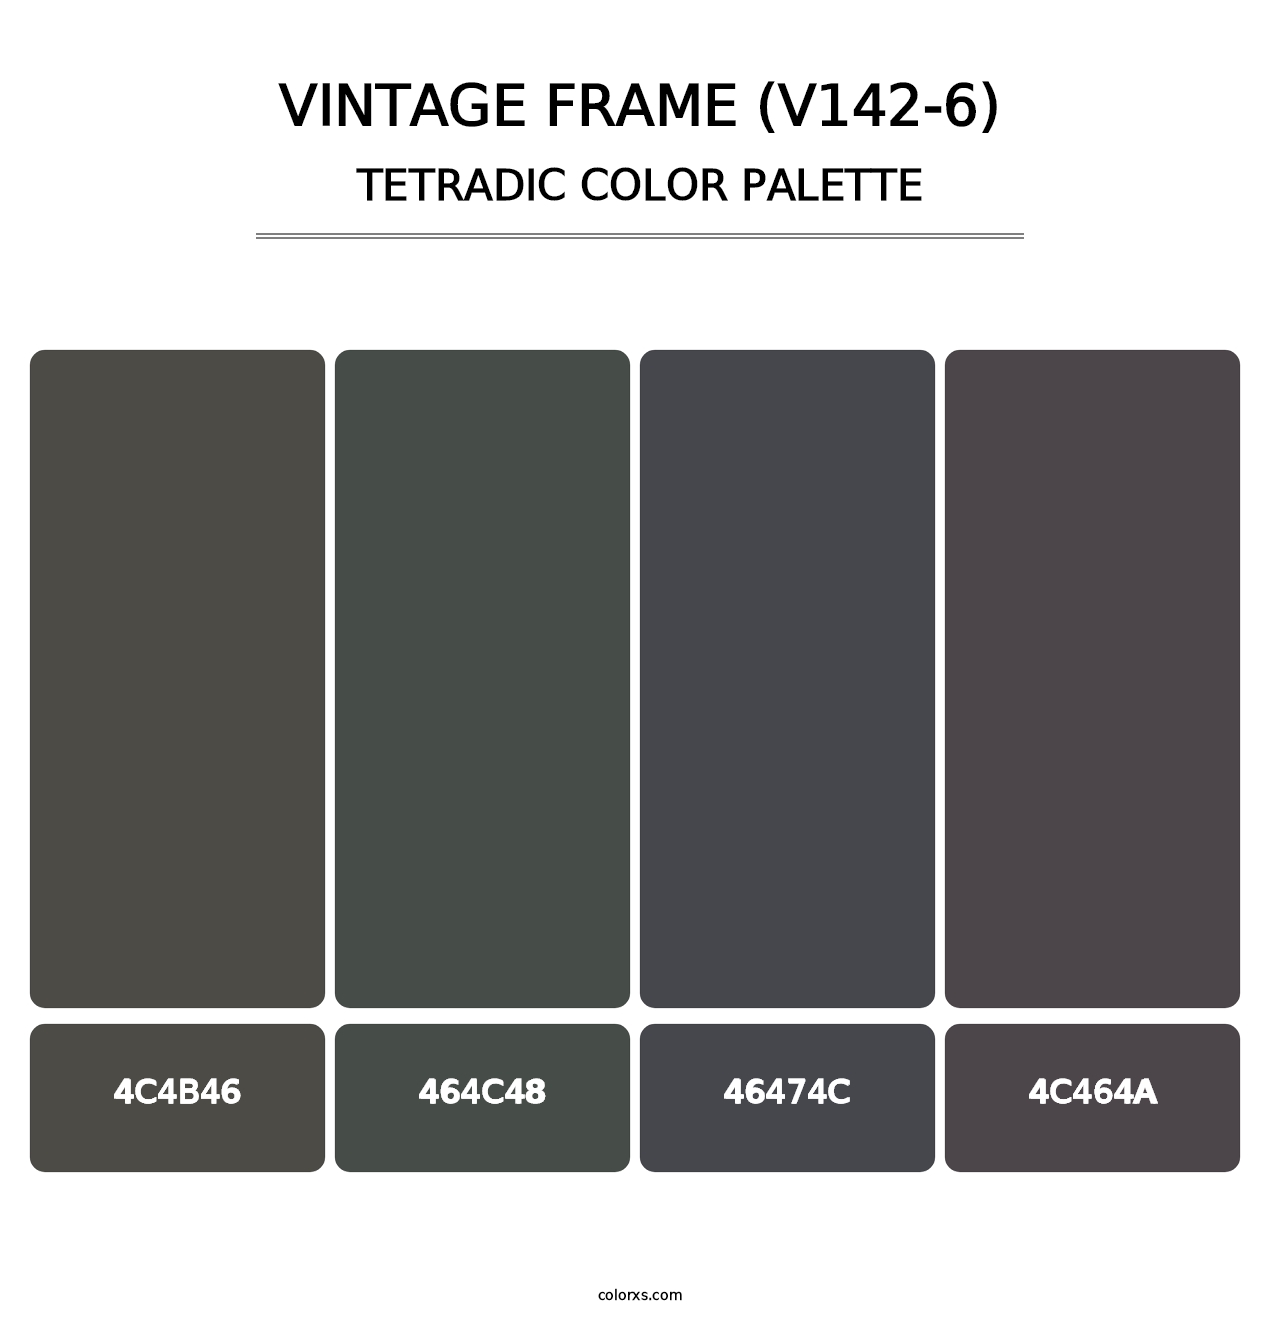 Vintage Frame (V142-6) - Tetradic Color Palette